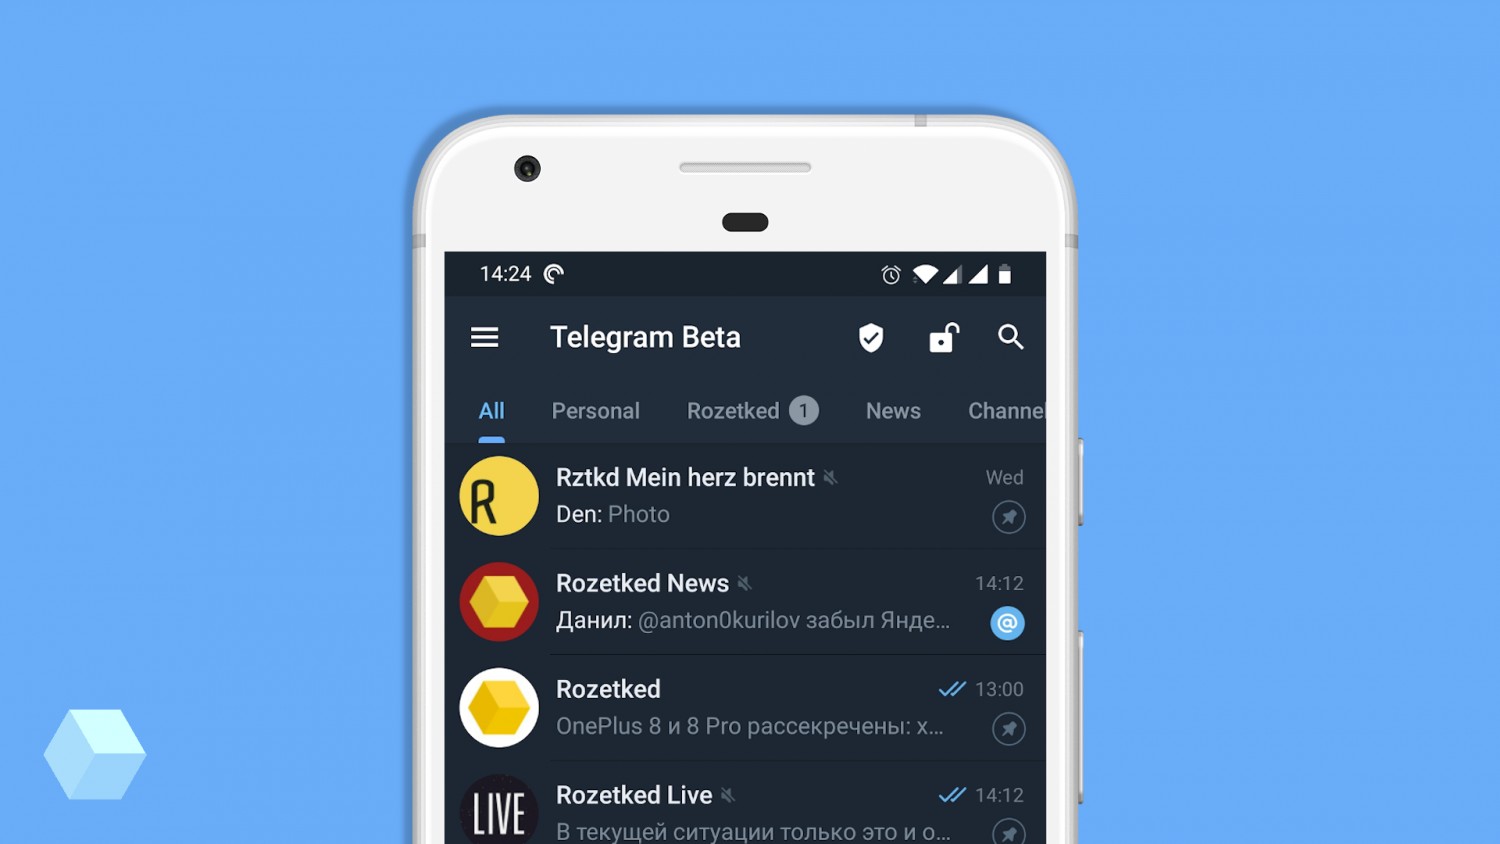 В Telegram Beta для Android появились настраиваемые вкладки с чатами